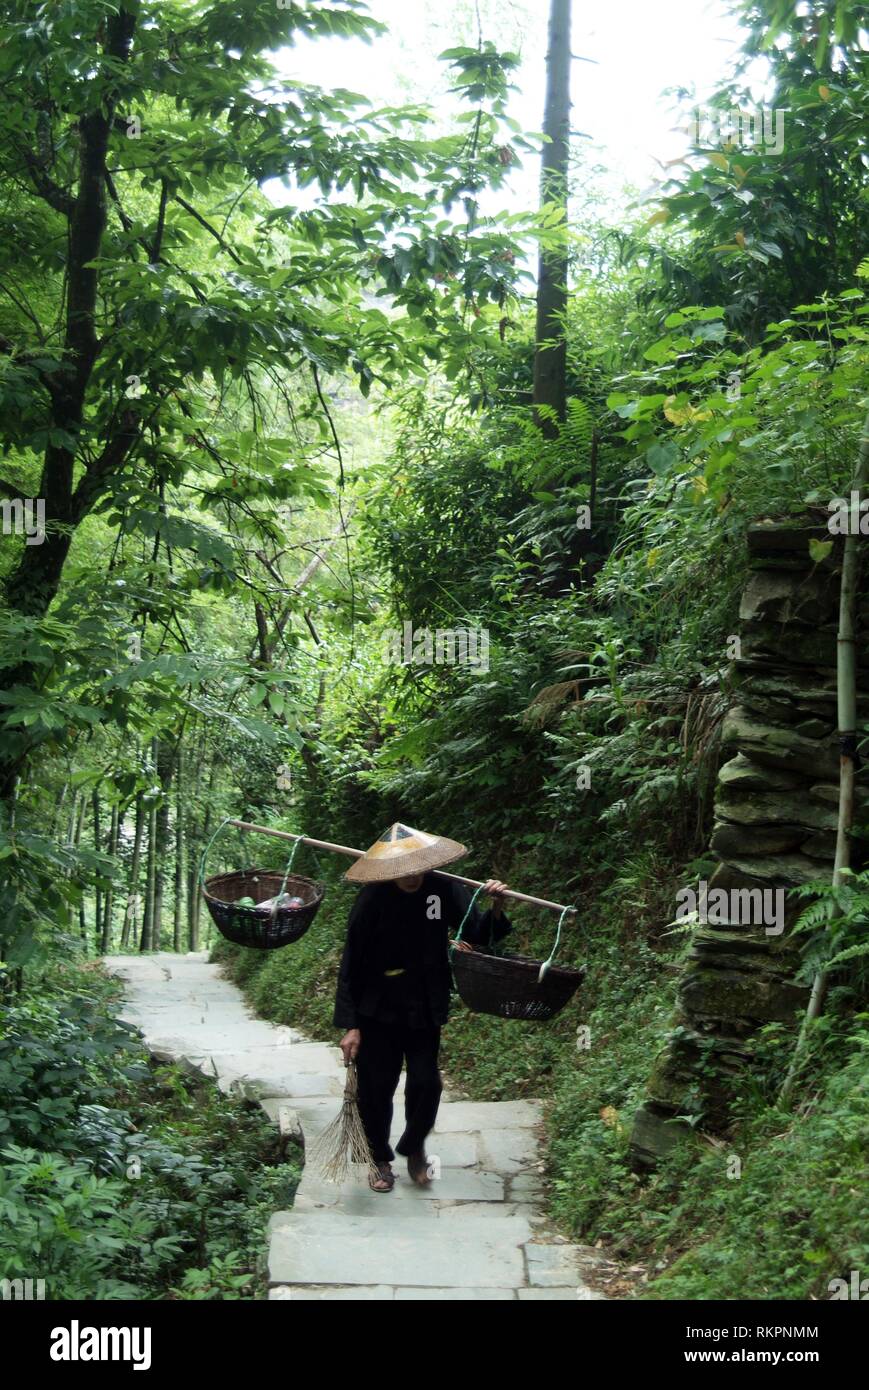 Un homme marche Zhuang le long d'un chemin de montagne dans la région de Ping'An, un petit hameau dans l'épine dorsale du Dragon- Longji terrasses de riz, Longshen Comté. Couper dans le c Banque D'Images